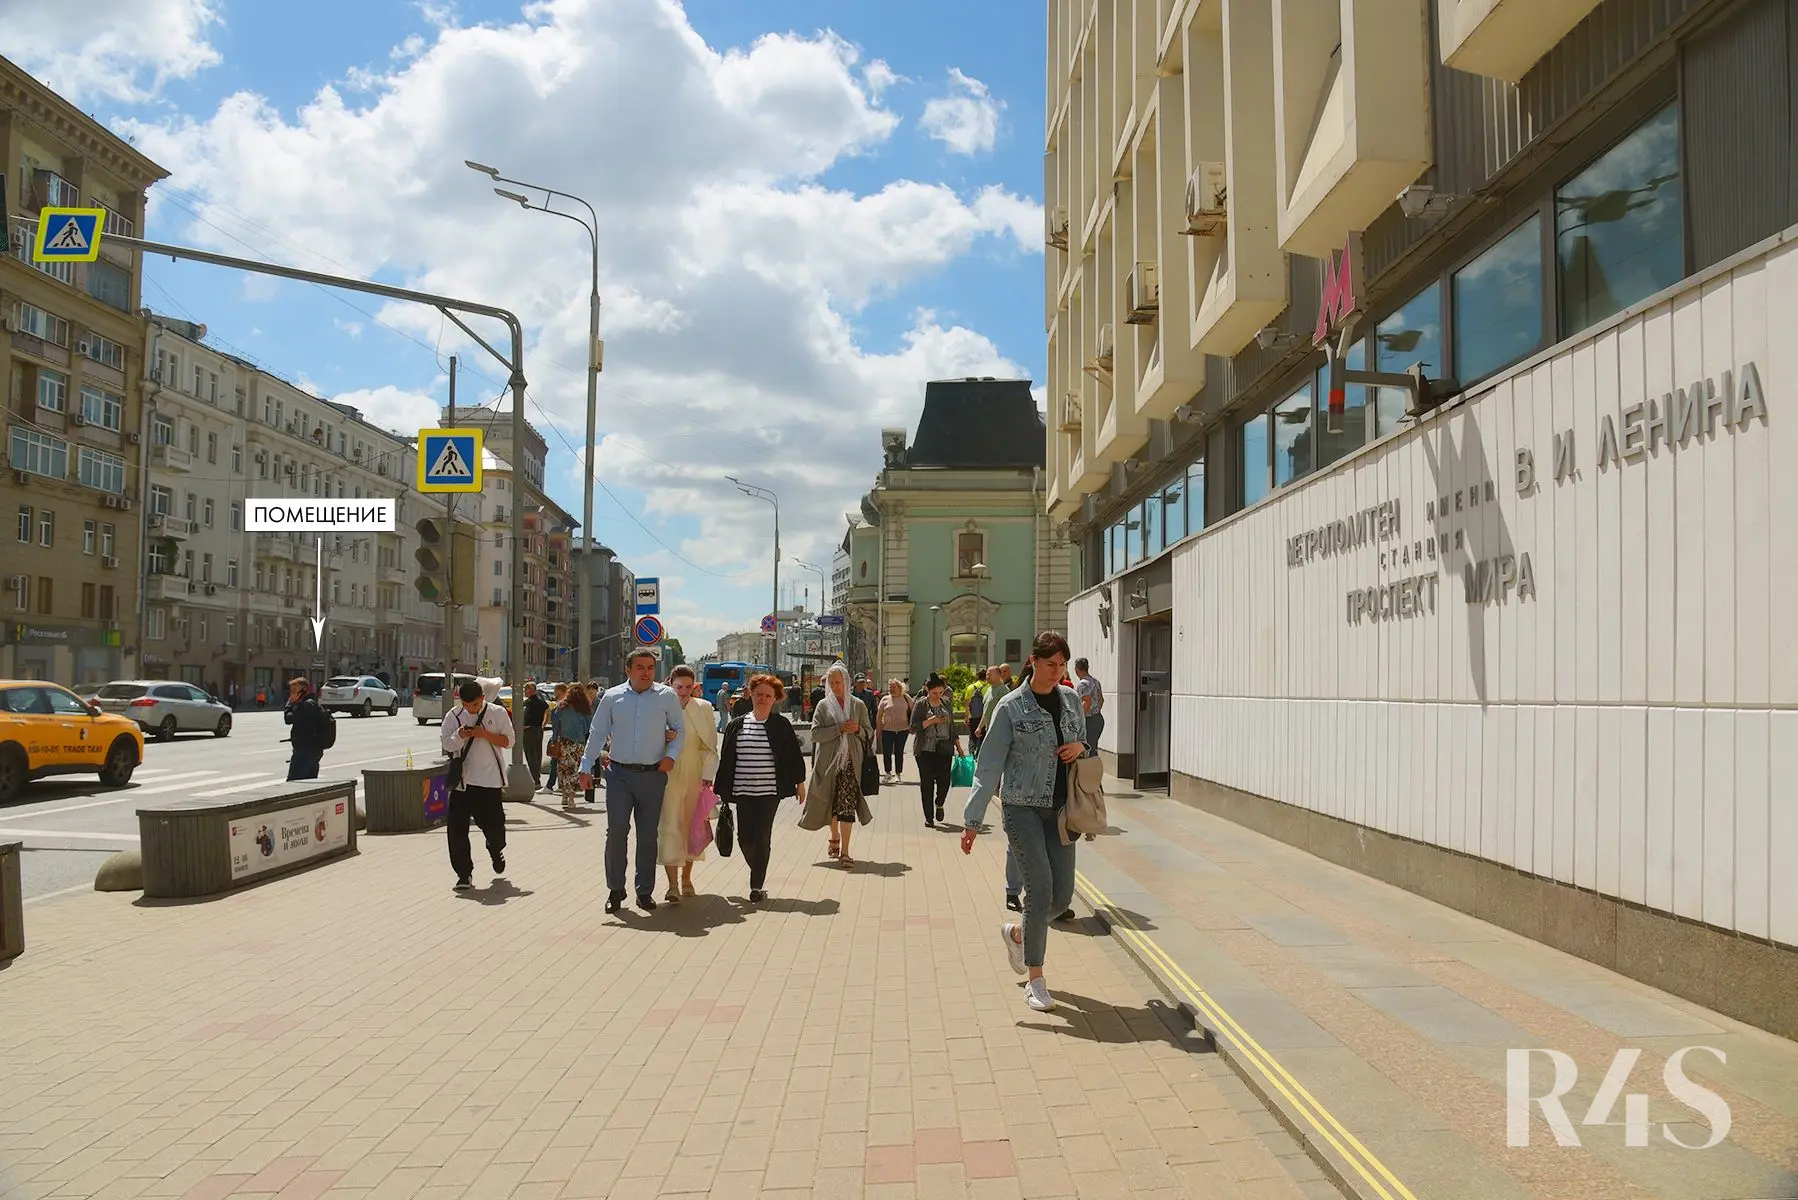 Продажа готового арендного бизнеса площадью 14 м2 в Москве: проспект Мира, 44 R4S | Realty4Sale